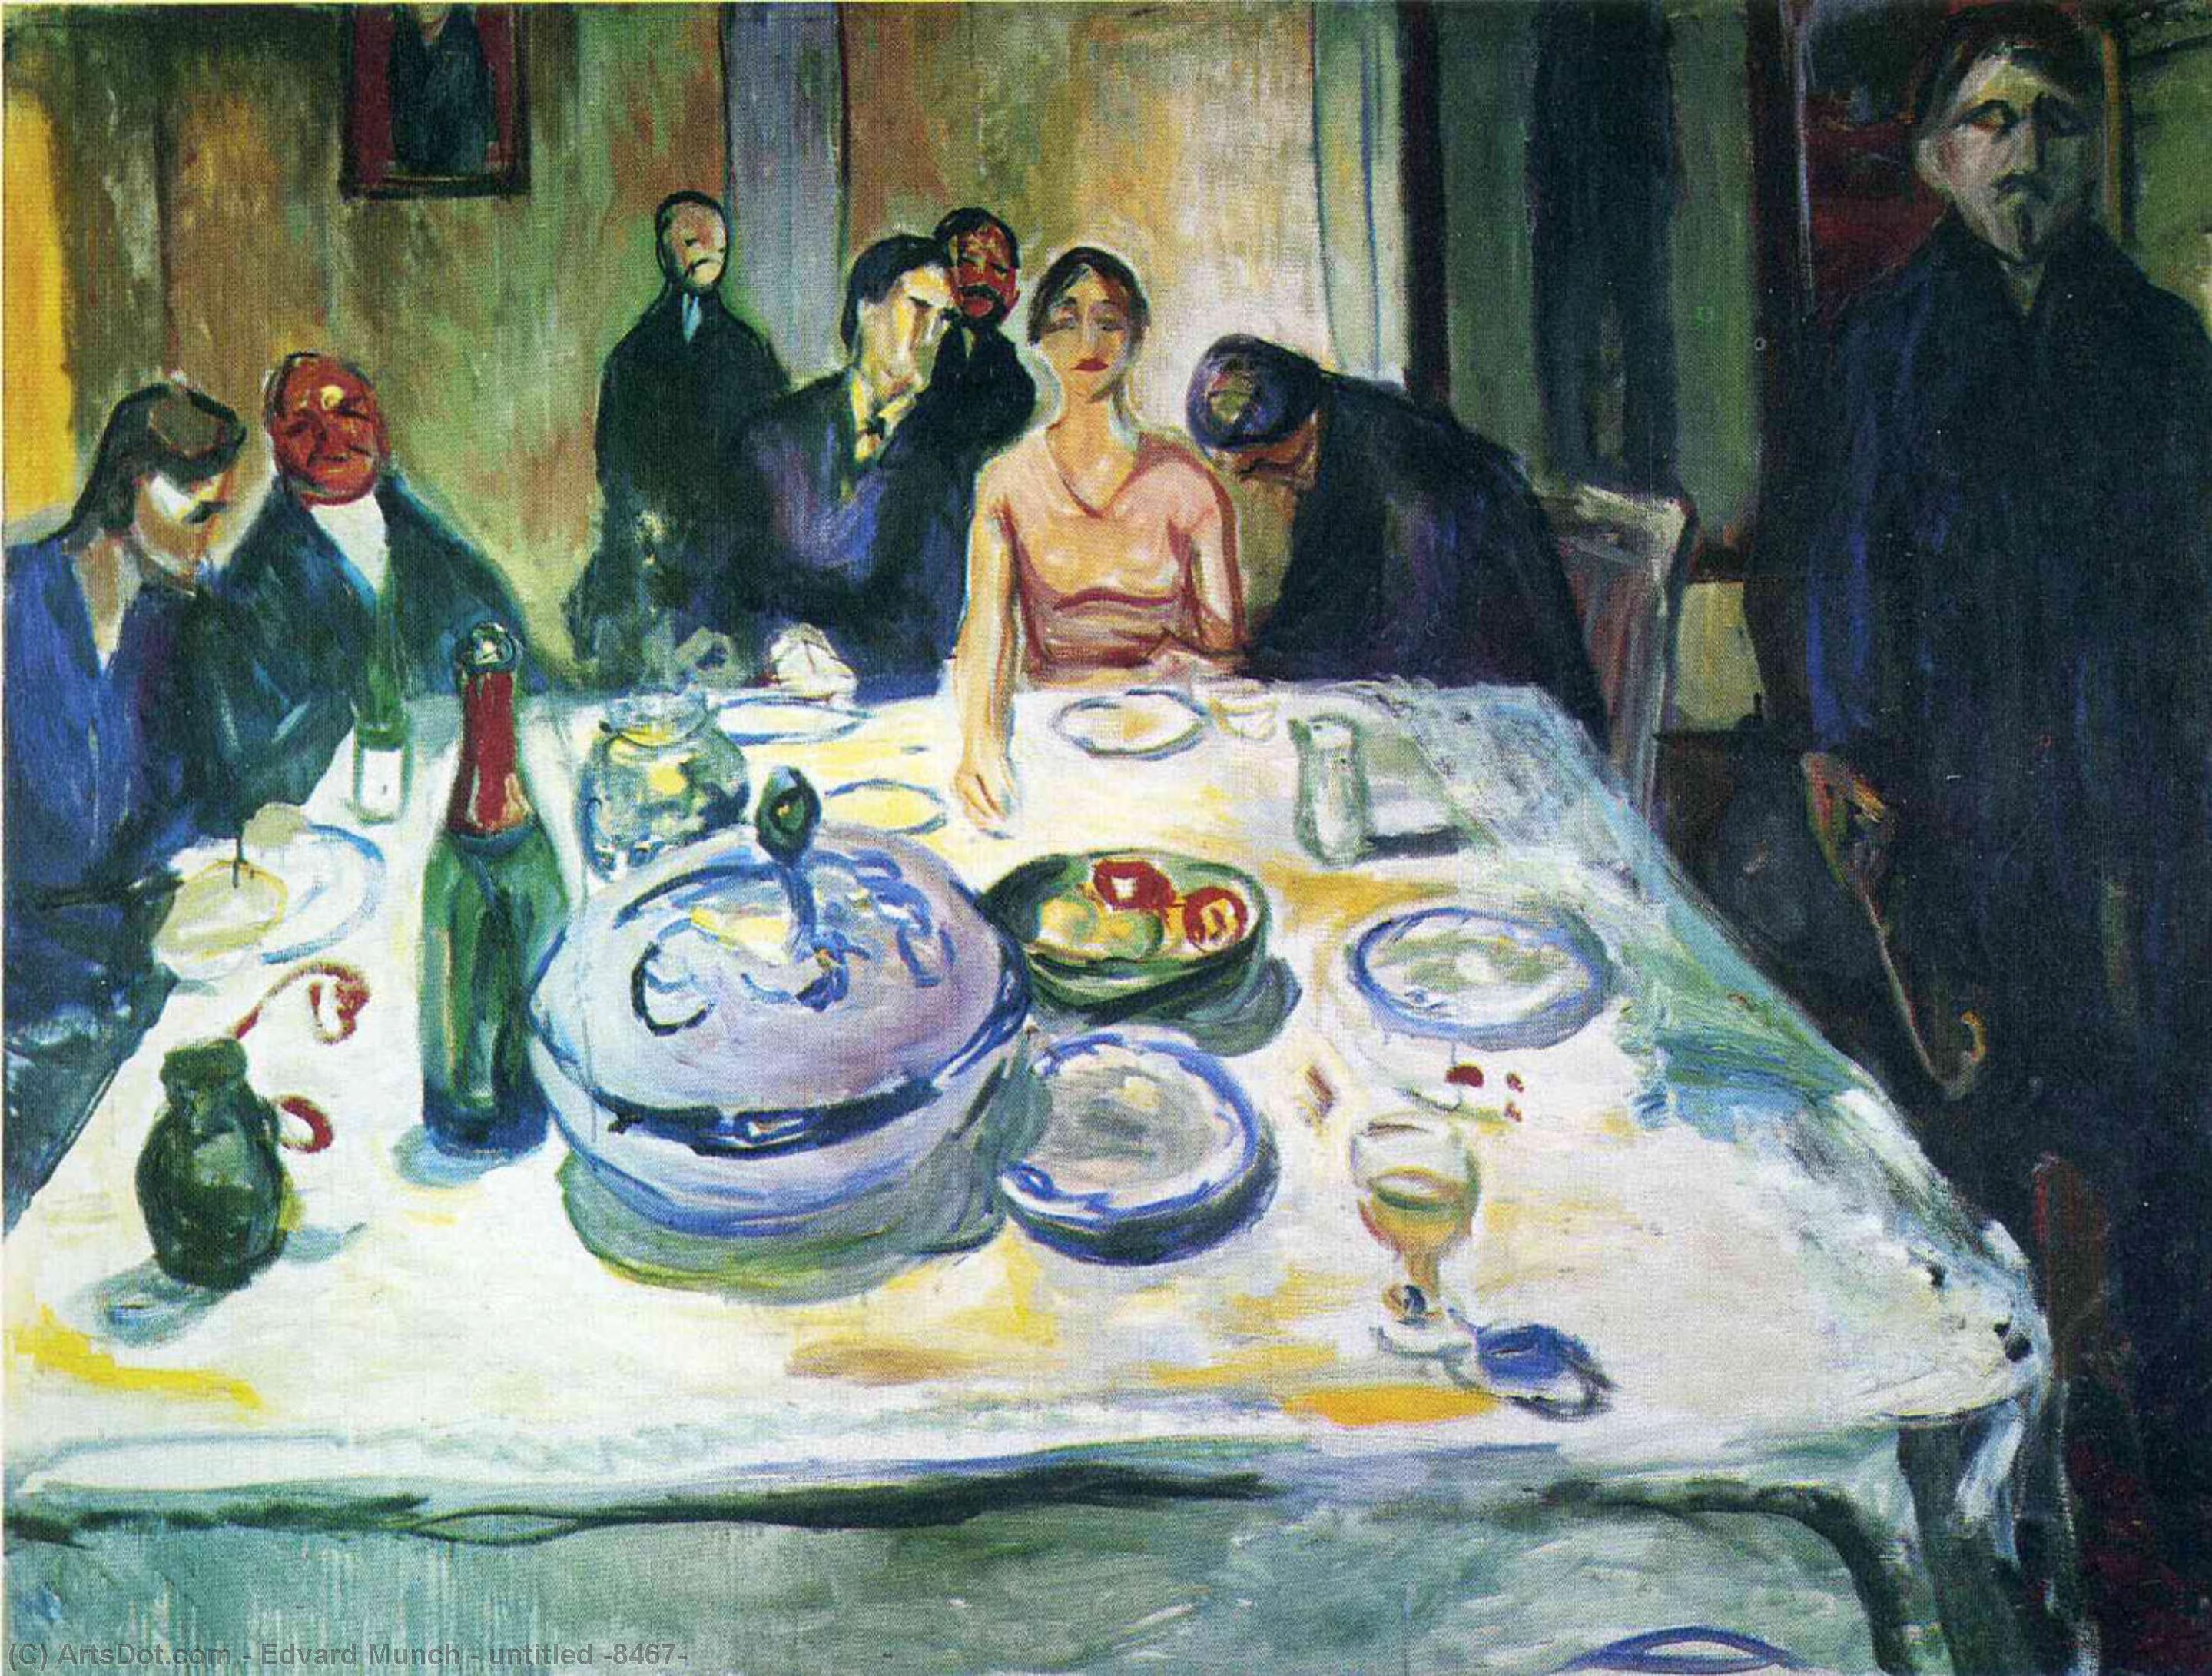 Wikioo.org - Bách khoa toàn thư về mỹ thuật - Vẽ tranh, Tác phẩm nghệ thuật Edvard Munch - untitled (8467)